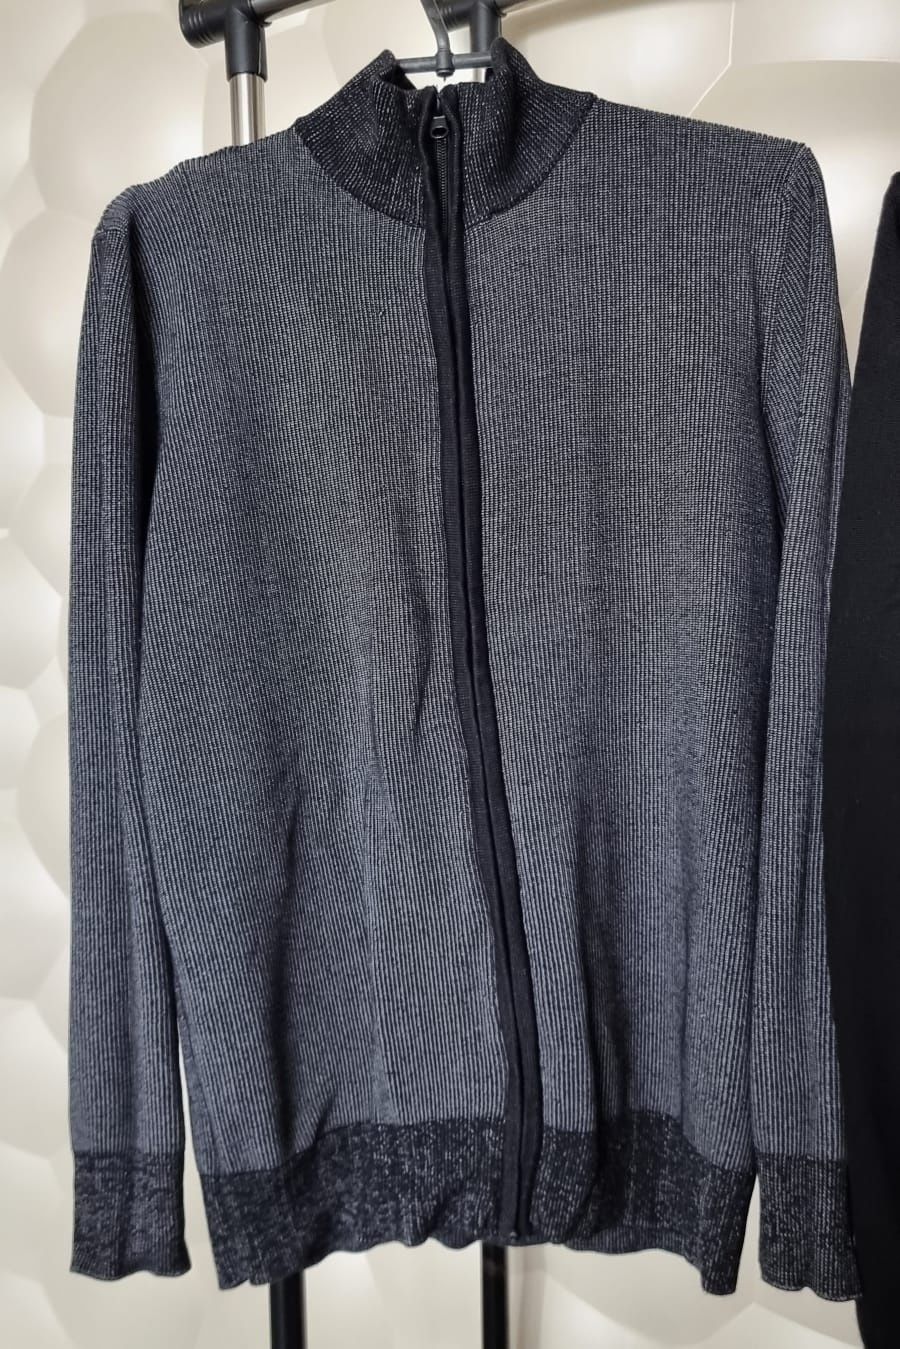 Кофта свитер мужской шерсть трикотаж синий черный серый осень L б/у